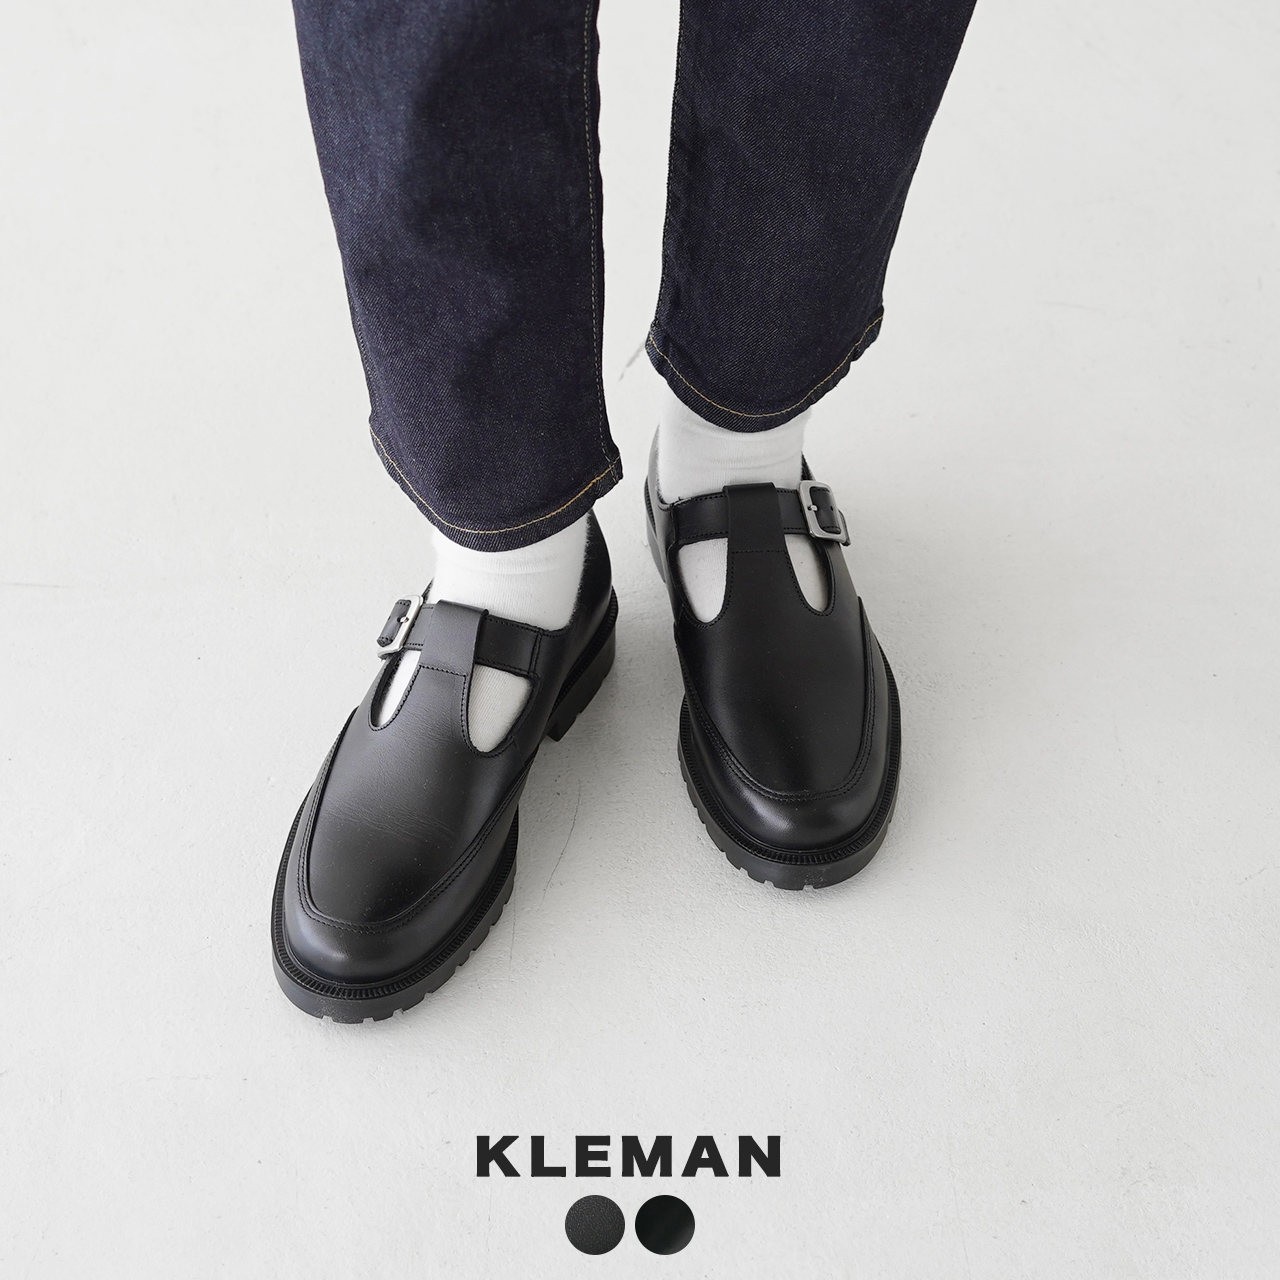 KLEMAN クレマン :幅広いコーディネートに合わせやすいストラップレザーシューズ レディース 革靴 低価格 デイジー Tストラップ レザーシューズ ショッピング DAISY DAISYOR 1018 ドレスシューズ ローヒール 送料無料 22.5cm-24.5cm